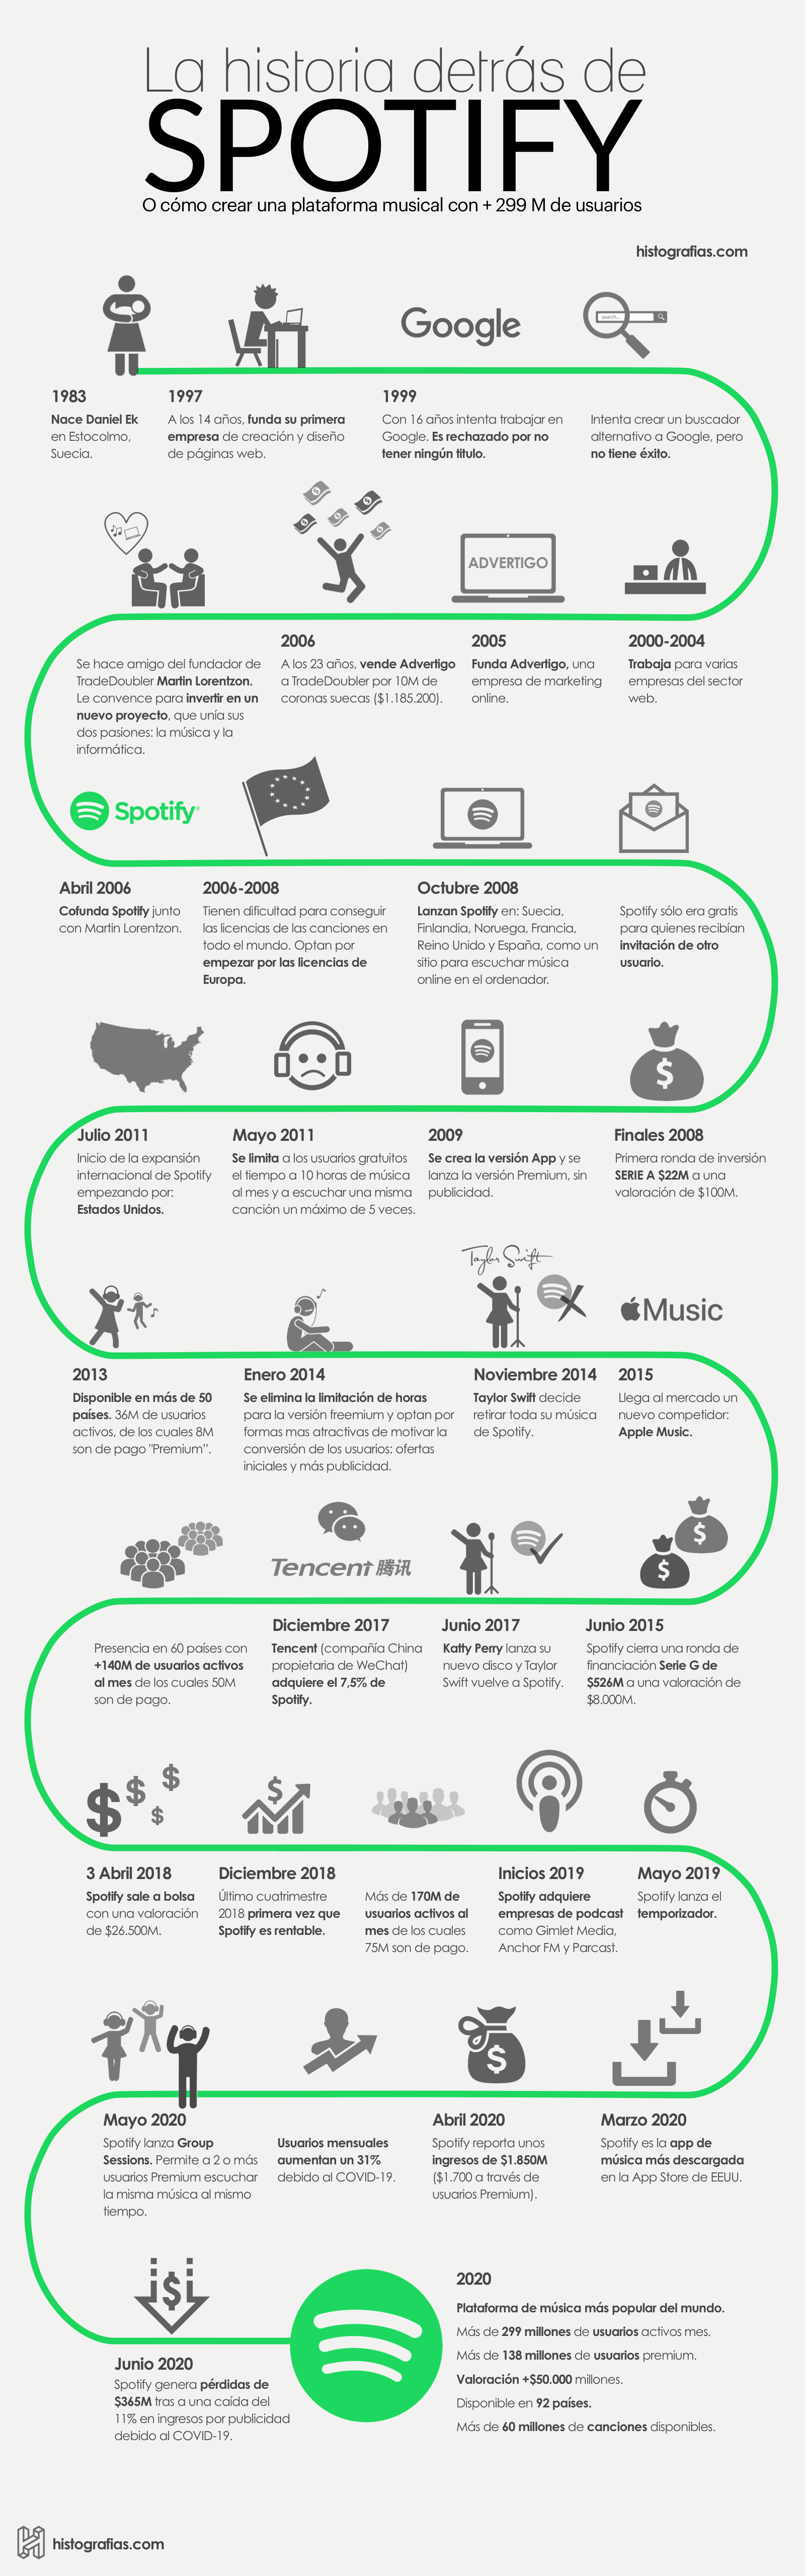 infografía que cuenta la historia de Spotify desde el nacimiento de su fundador Daniel Ek, hasta el año 2020.